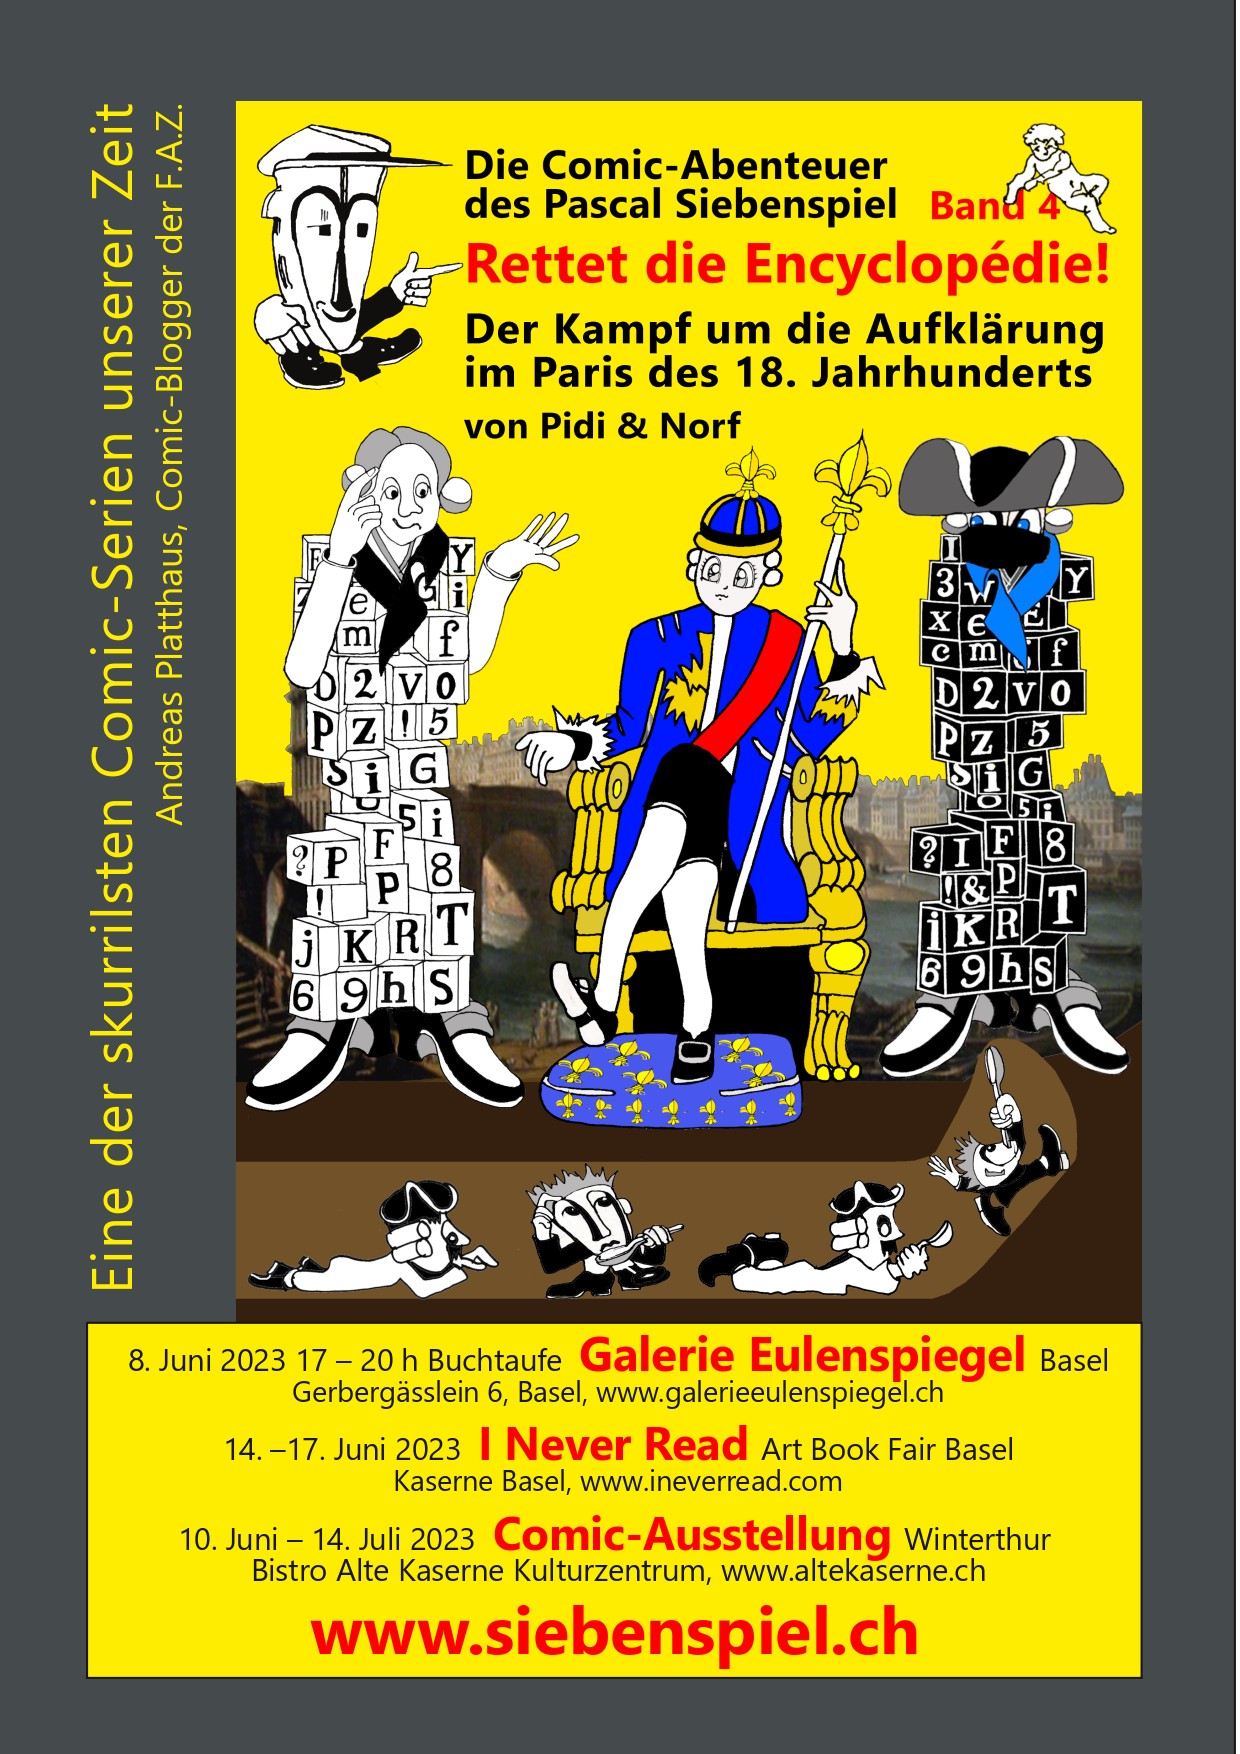 Flyer-Siebenspiel-Events-Basel-Winterthur-2023